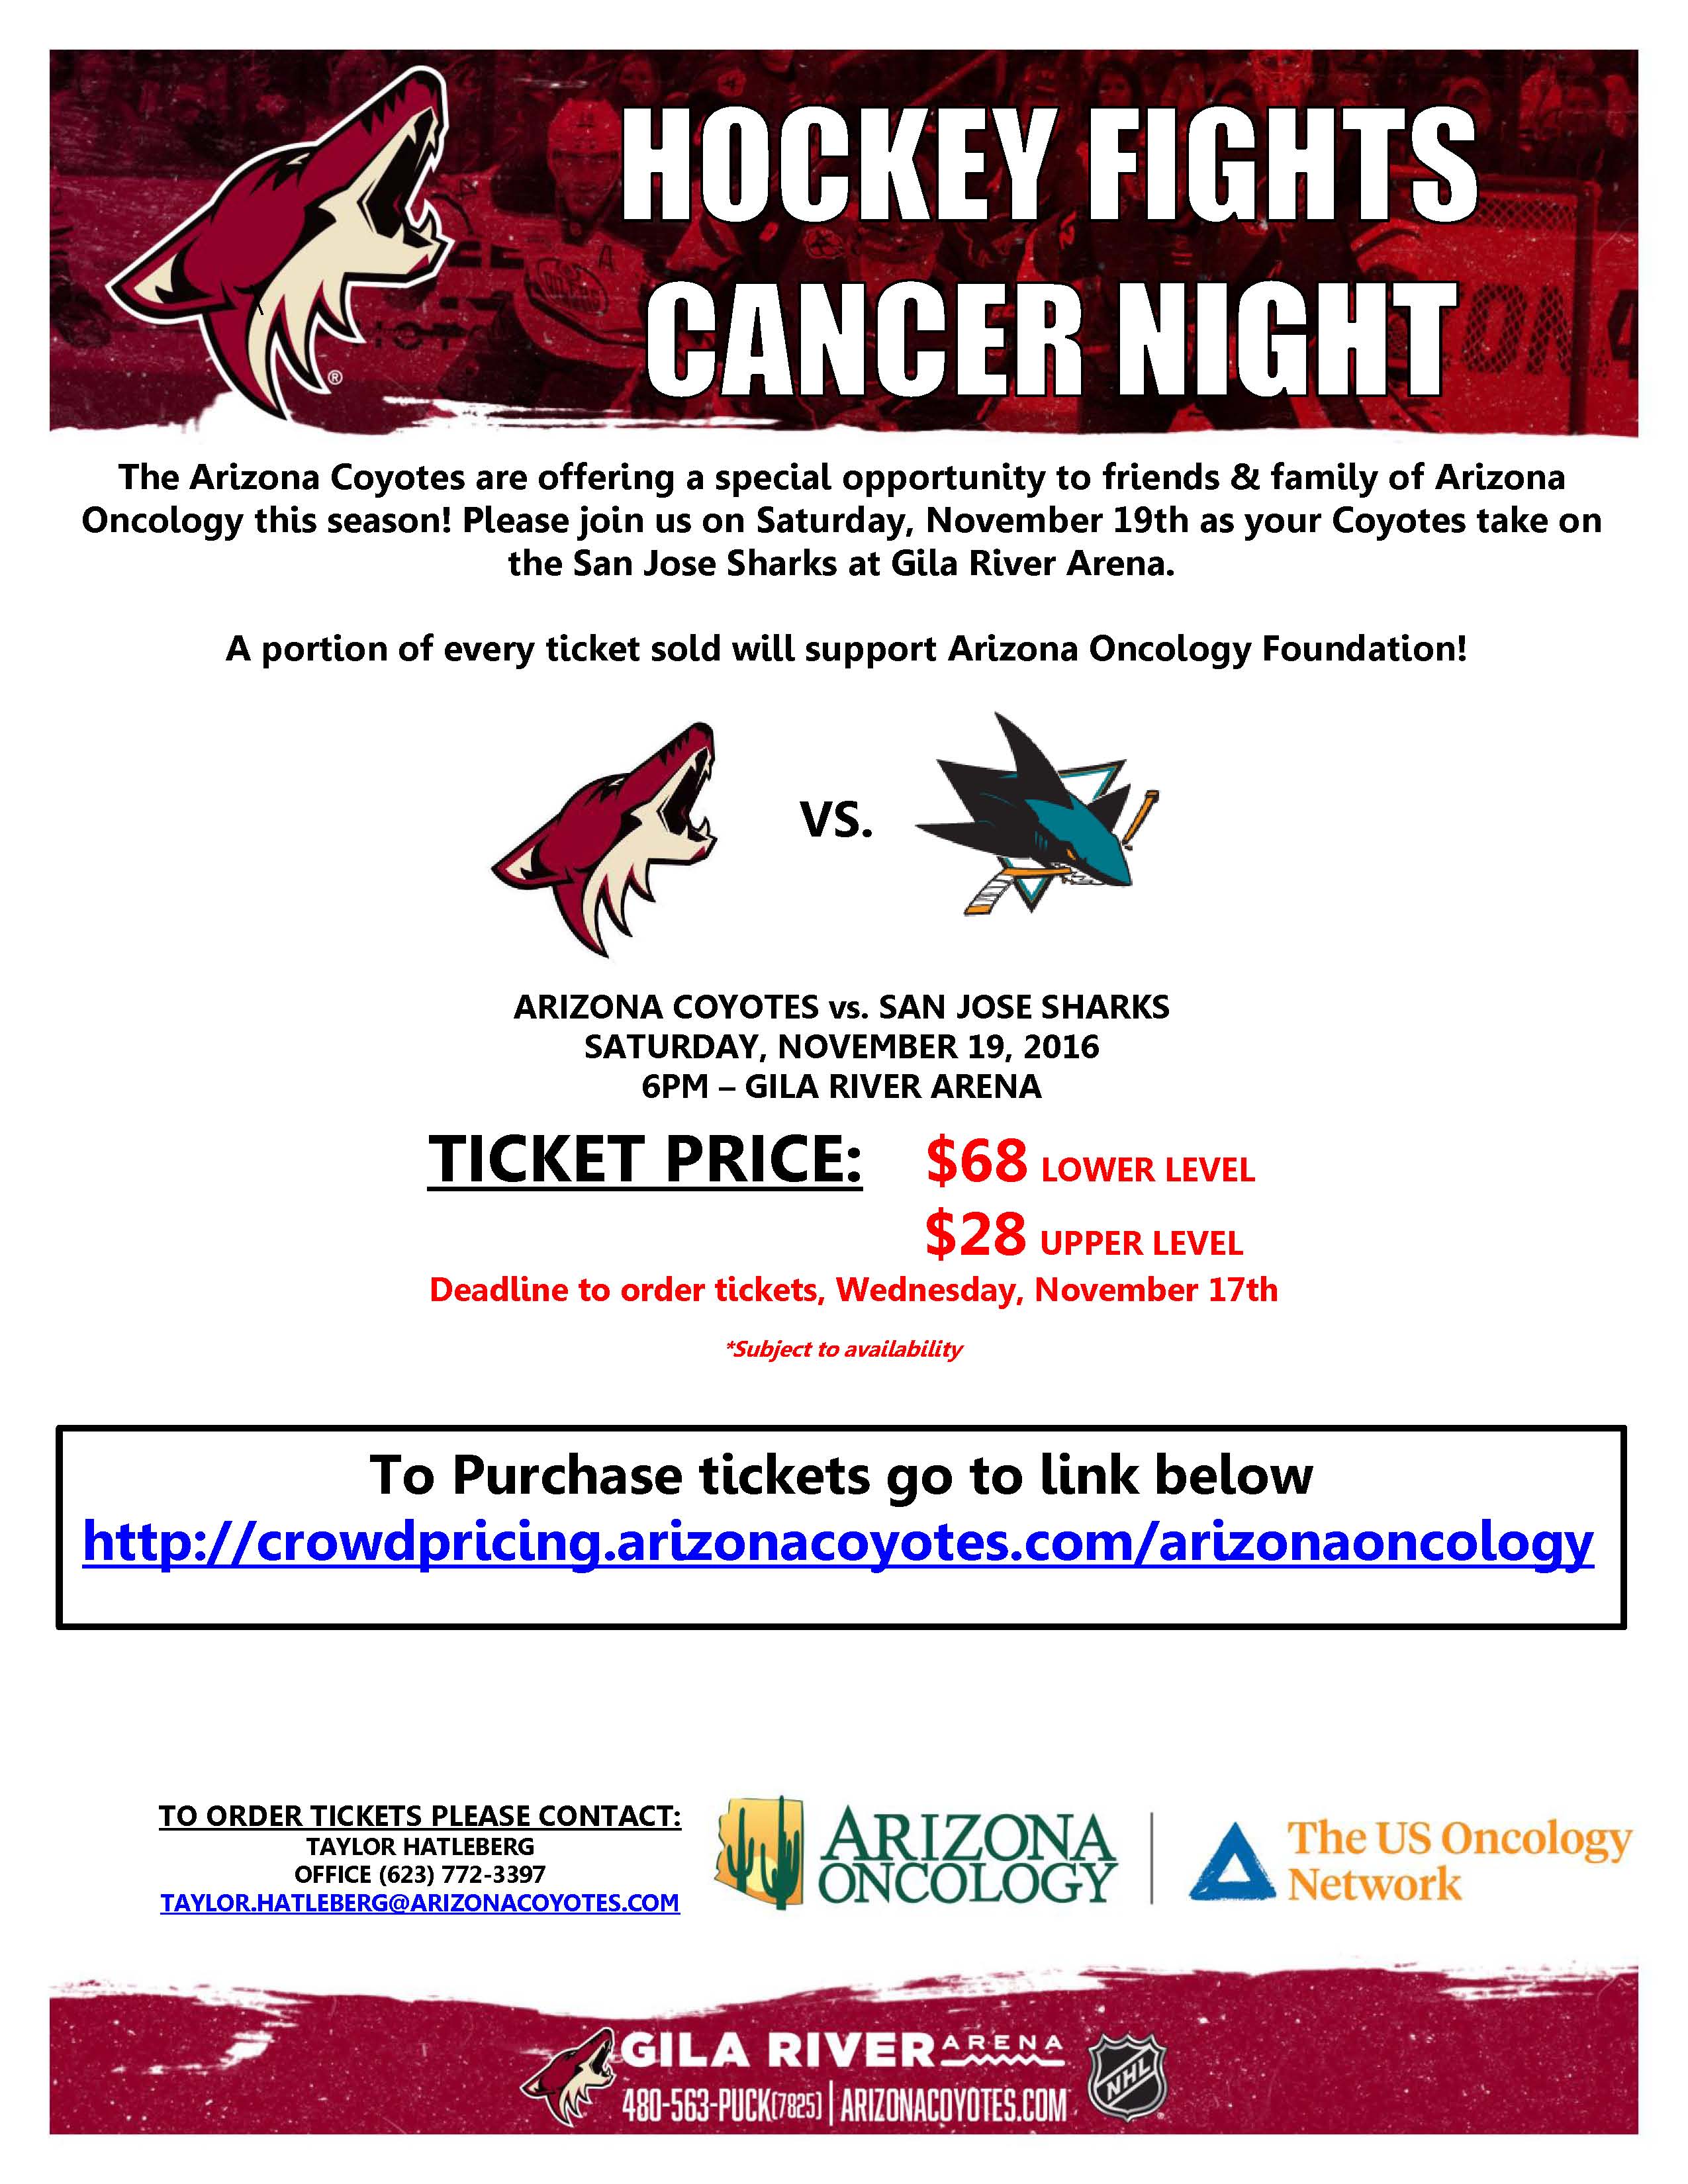 Arizona Coyotes - Hockey Fights Cancer Night 